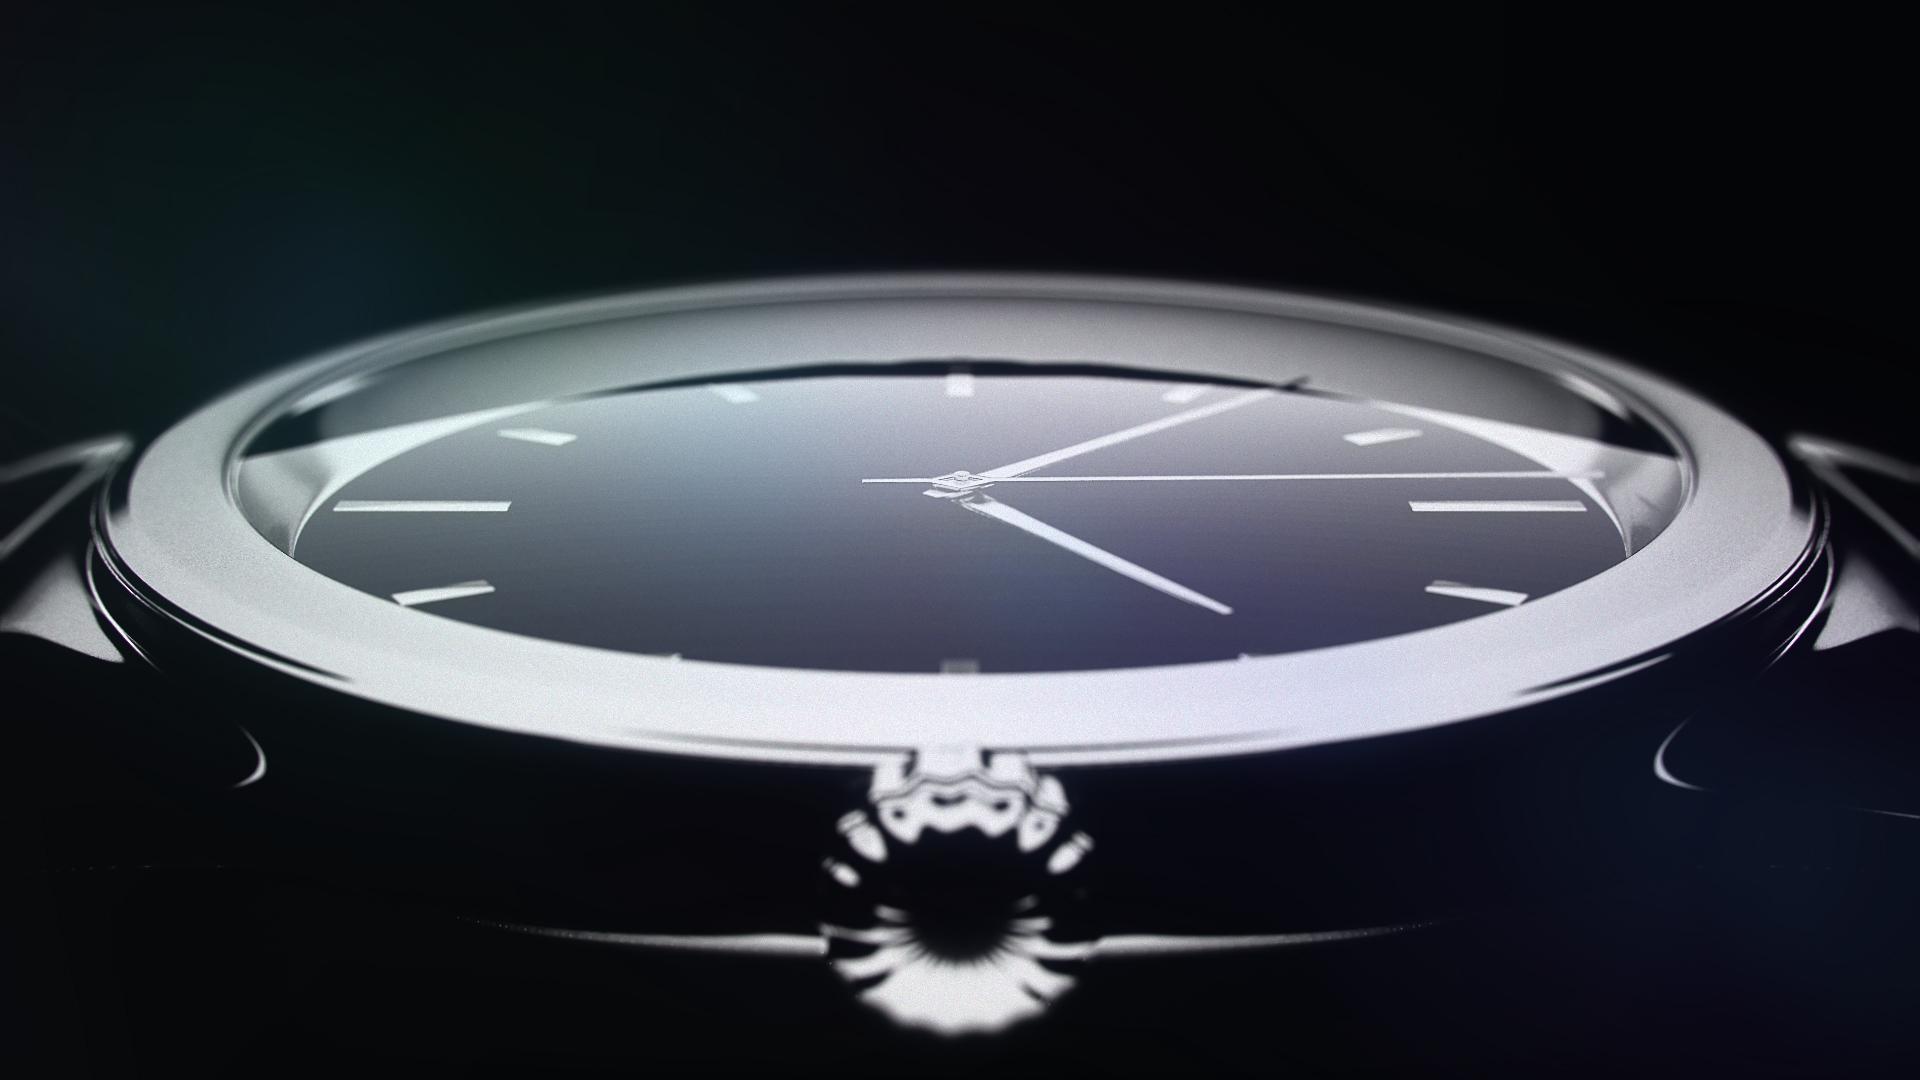 Product Produktvisualisierung "Armbanduhr" - Gentlepix image